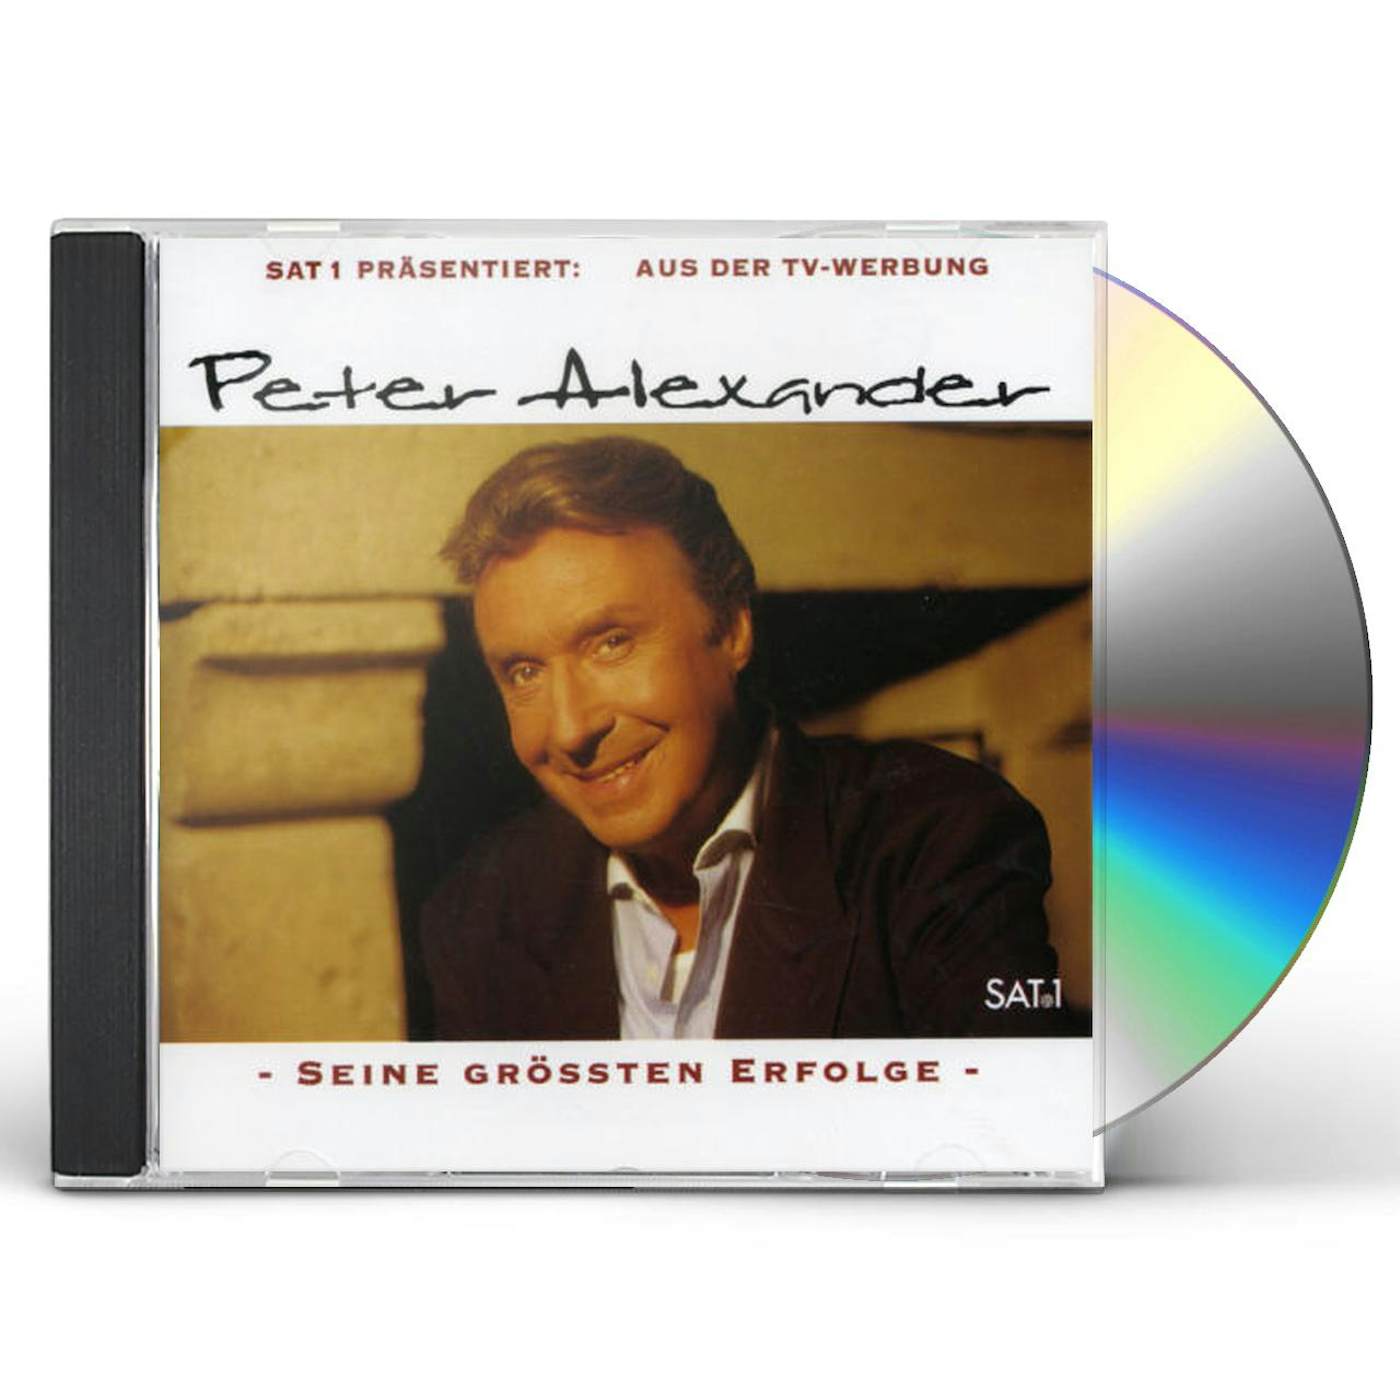 SAT 1 PRASENTIERT: PETER ALEXANDER SEINE CD